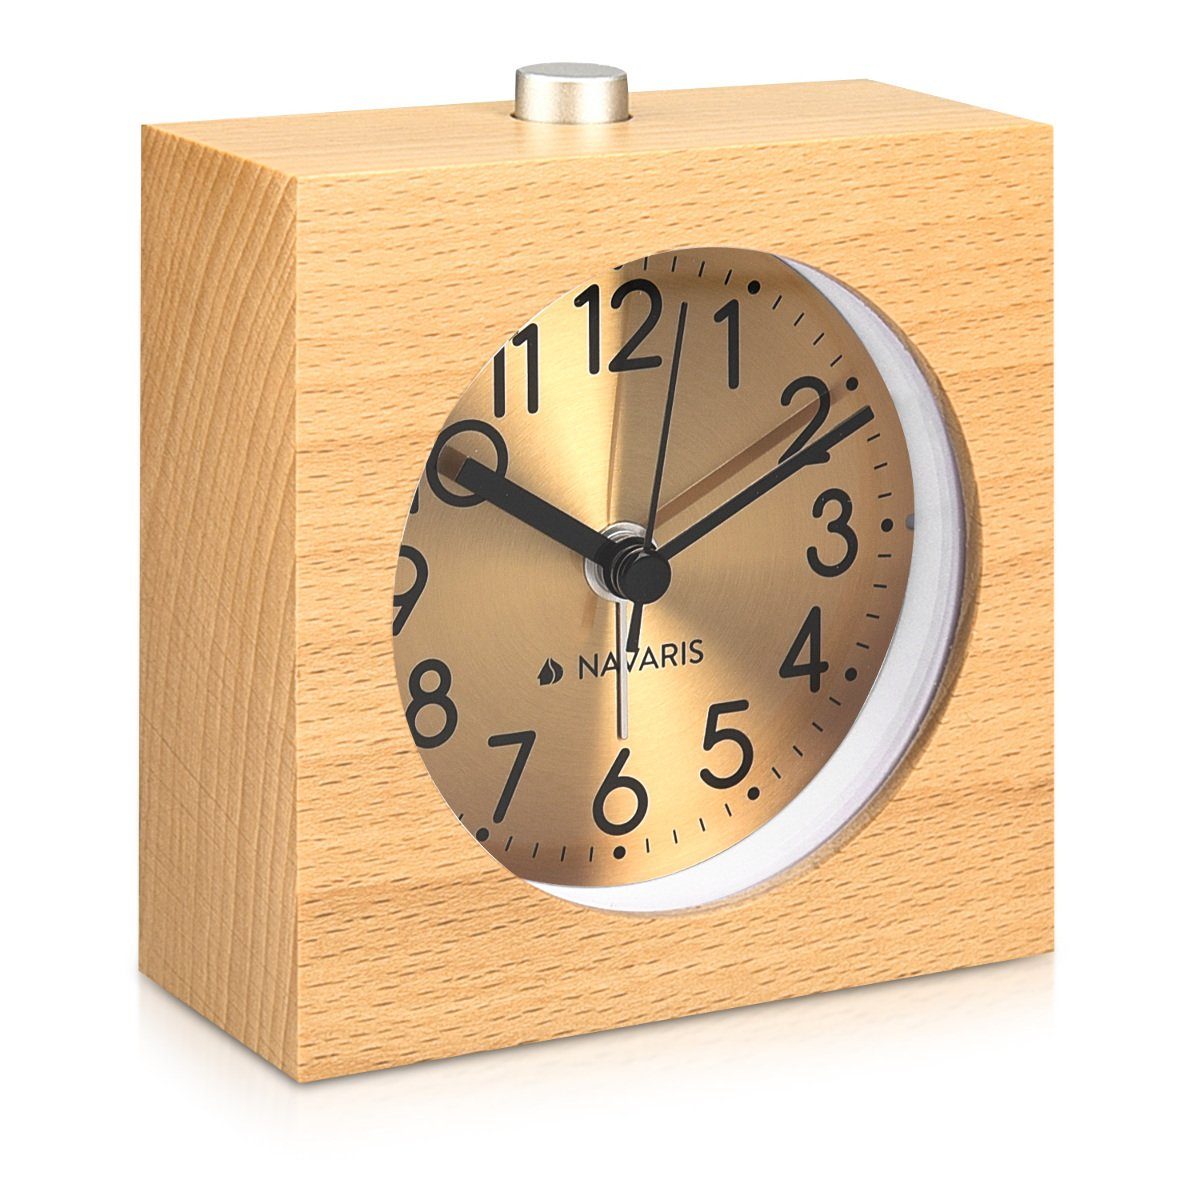 Navaris Wecker Analog Holz Wecker mit Snooze - Retro Uhr Quadrat mit  Ziffernblatt in Gold Alarm Licht - Leise Tischuhr ohne Ticken - Naturholz  online kaufen | OTTO